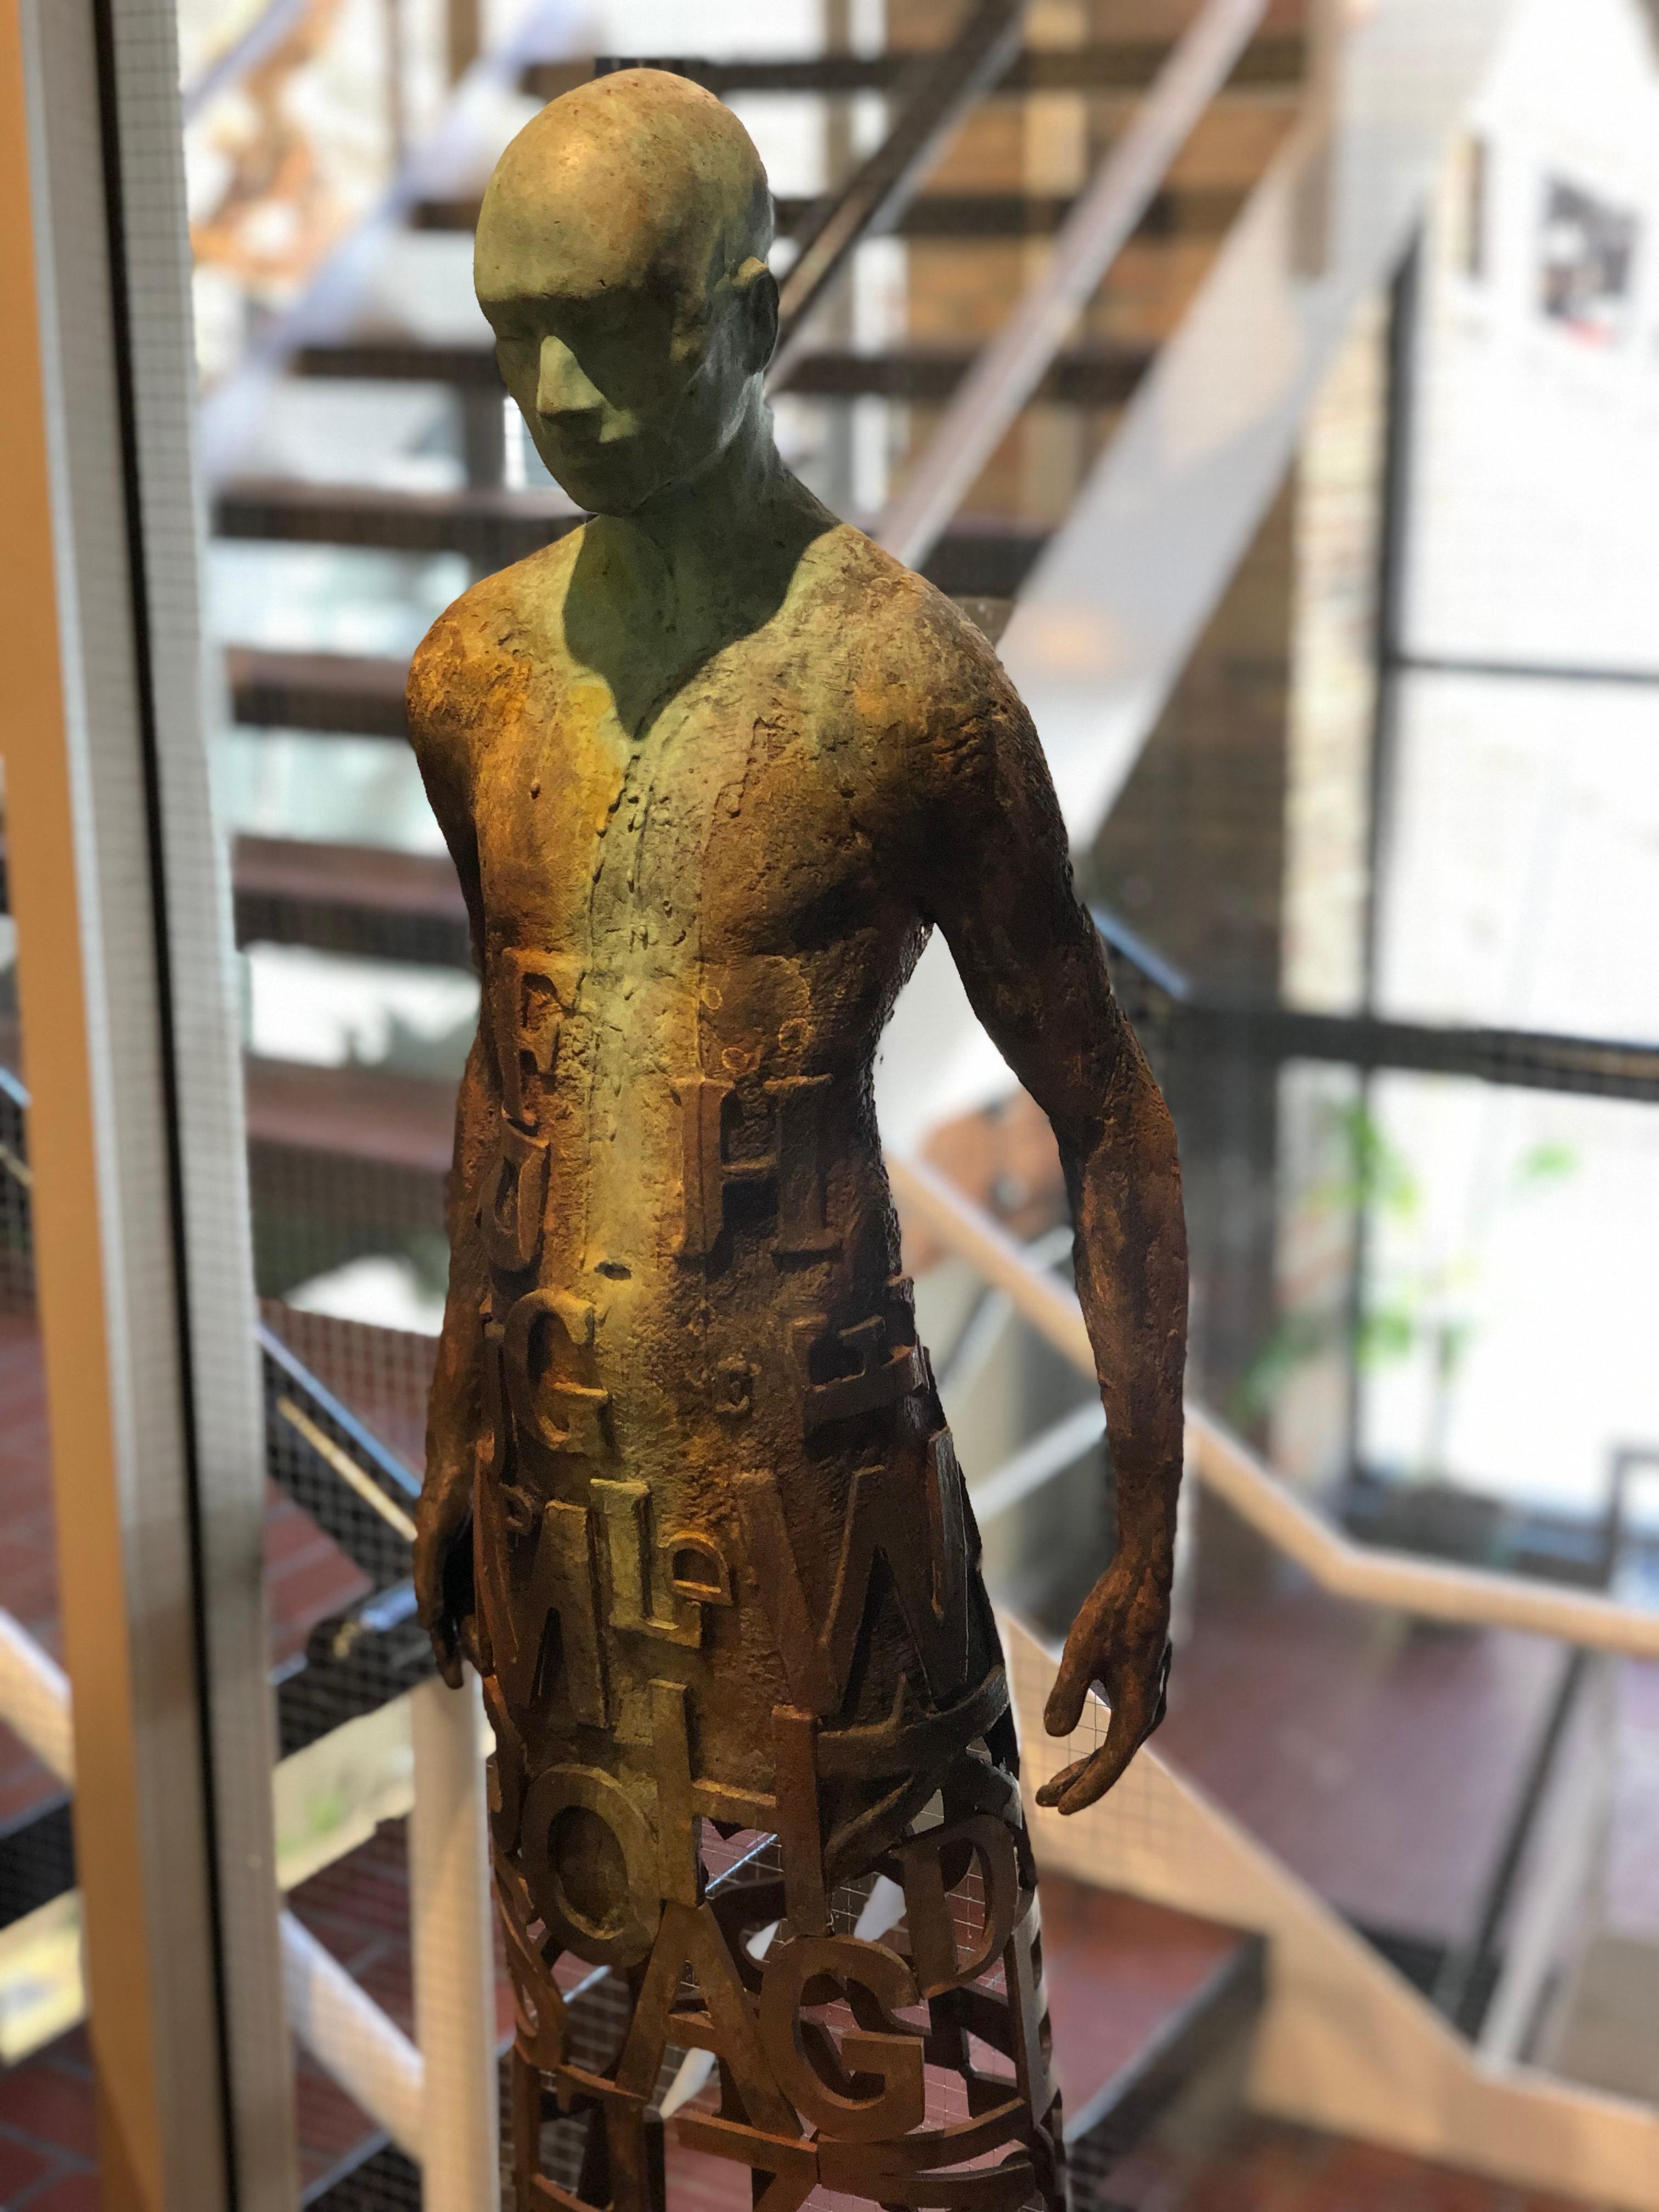 Nuntius – Skulptur aus Bronze und Stahl mit Figur und durchsichtigem „Wörter“-Garment 10